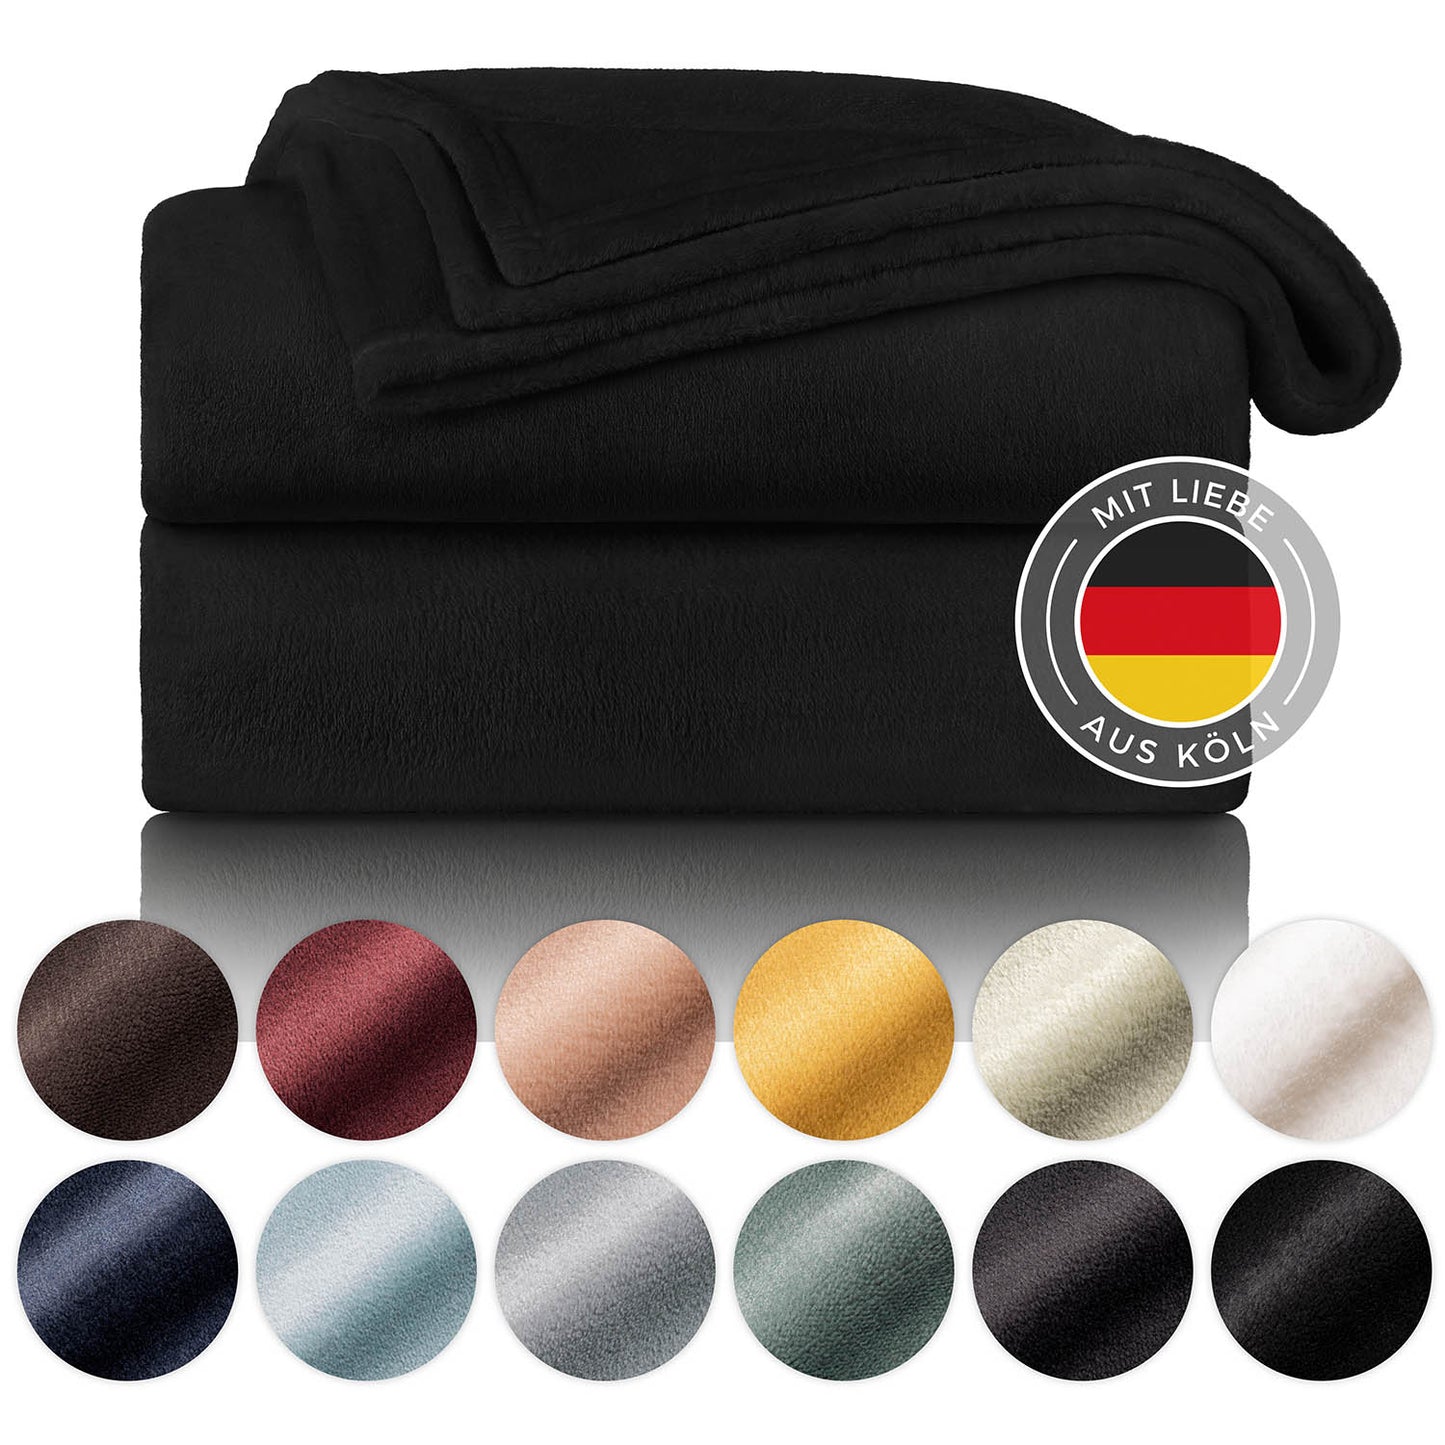 Schwarze Fleece-Kuscheldecke, gefaltet und präsentiert neben einer Farbpalette mit verschiedenen Farboptionen und einem Label, das 'Mit Liebe aus Köln' sagt.